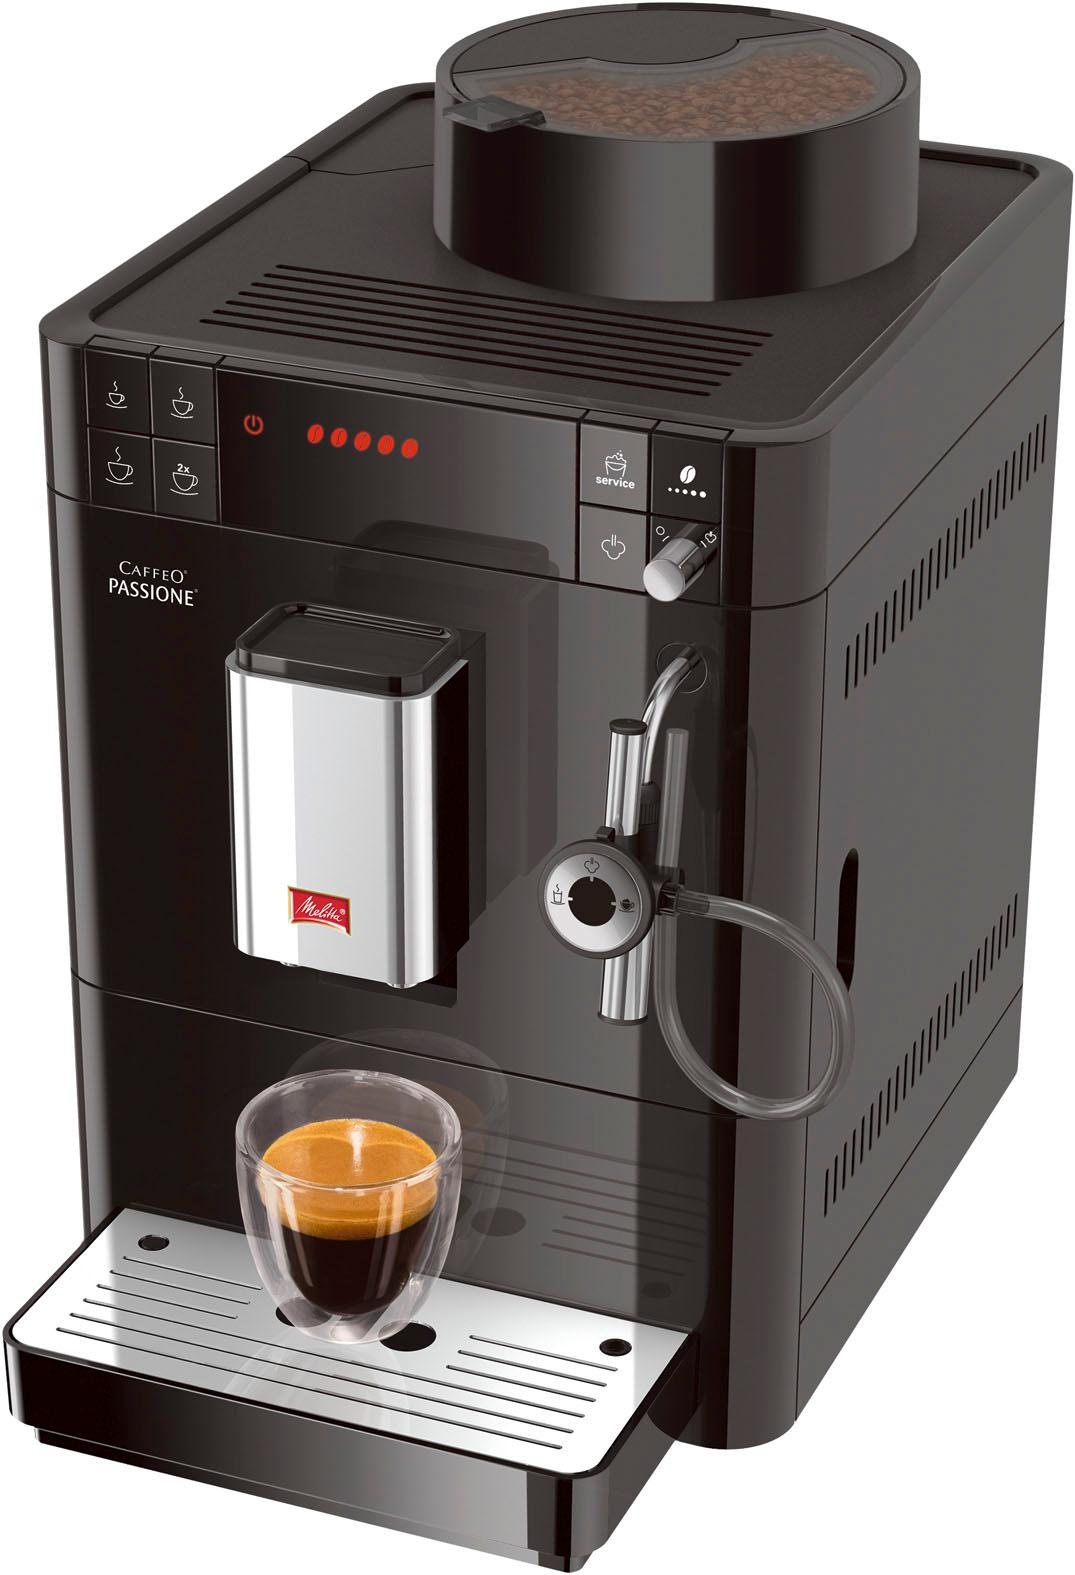 für frisch & Service-Taste Reinigung bestellen Entkalkung gemahlen, Tassengenau jetzt OTTO F53/0-102 Kaffeevollautomat schwarz«, Melitta bei »Passione®